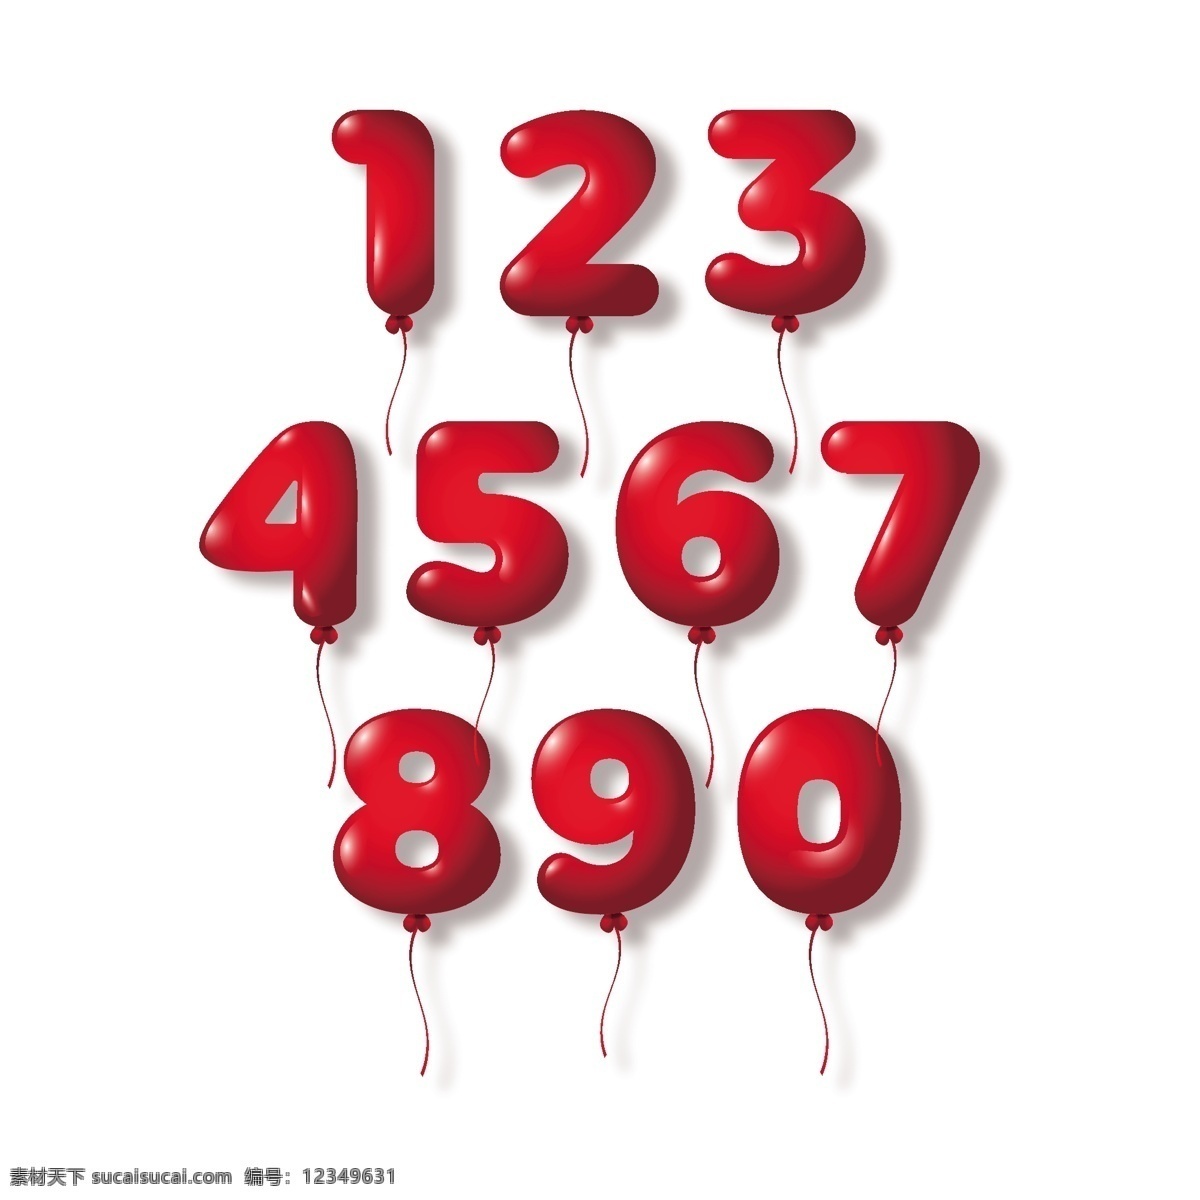 组 红色 数字 气球 元素 红色数字 数字元素 数字设计 卡通数字 可爱数字 数字气球